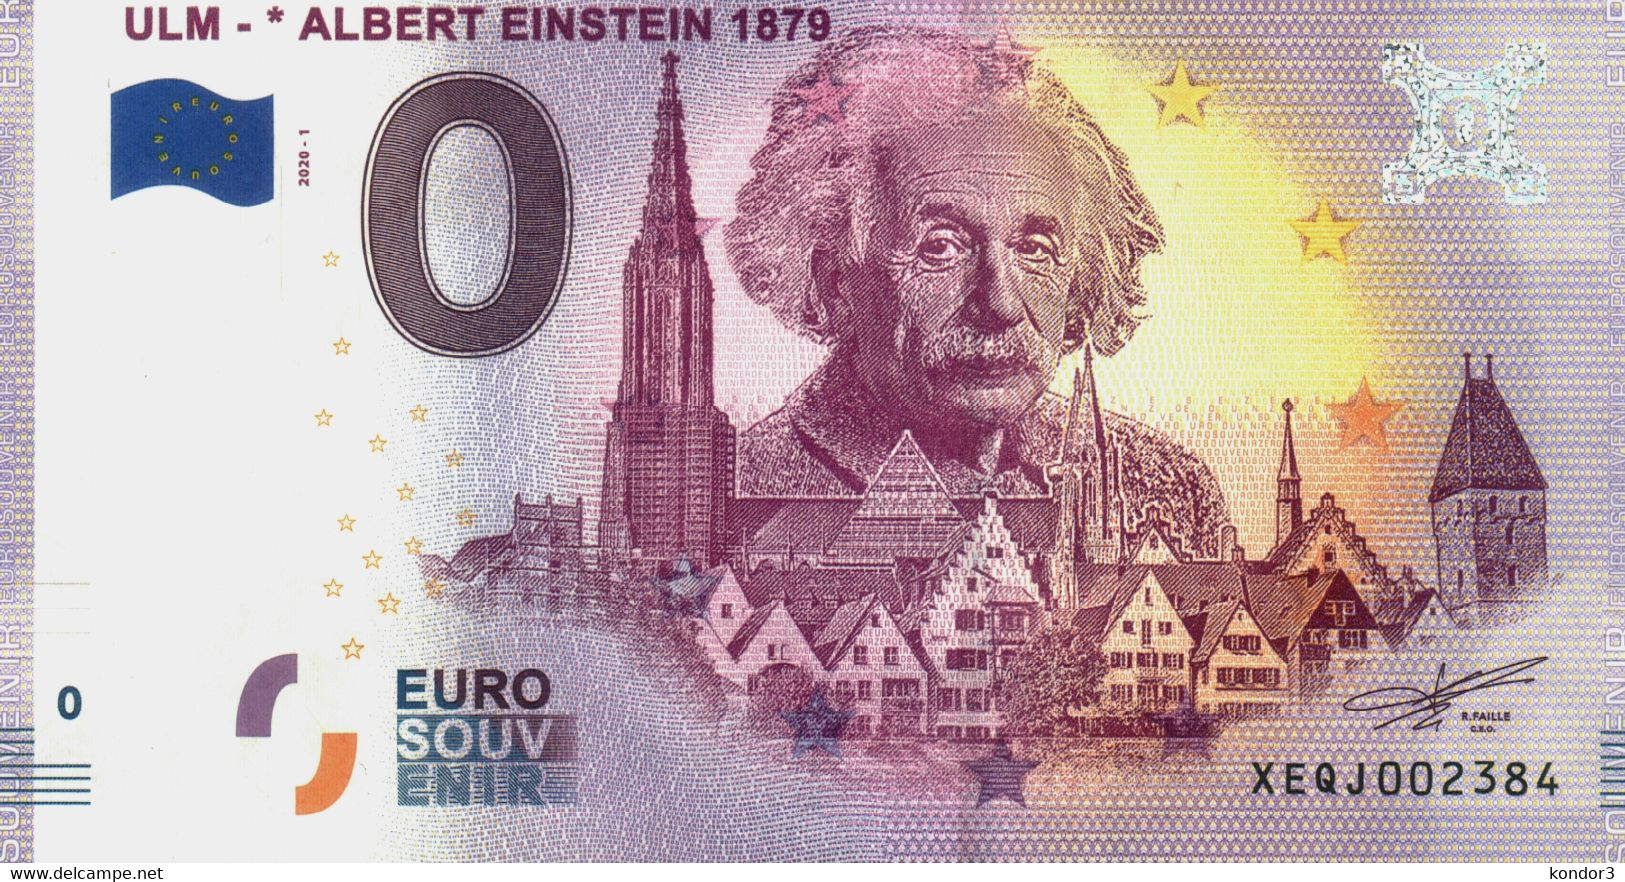 Albert Einstein. 0 Euro Ulm - Specimen